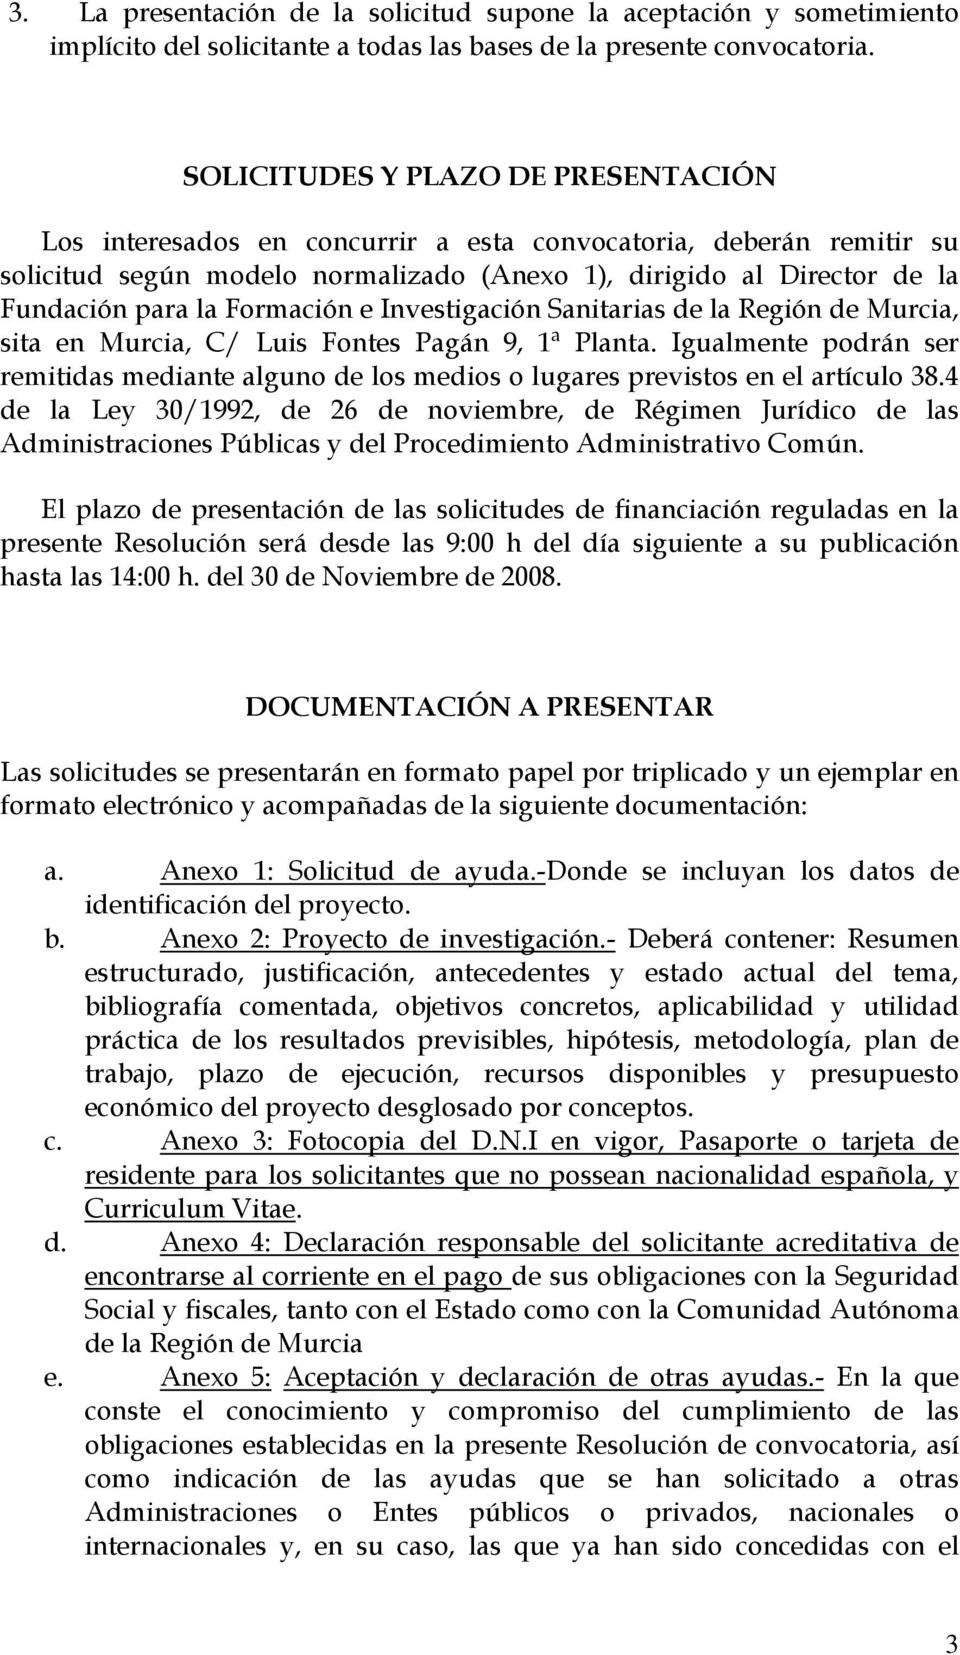 Formación e Investigación Sanitarias de la Región de Murcia, sita en Murcia, C/ Luis Fontes Pagán 9, 1ª Planta.